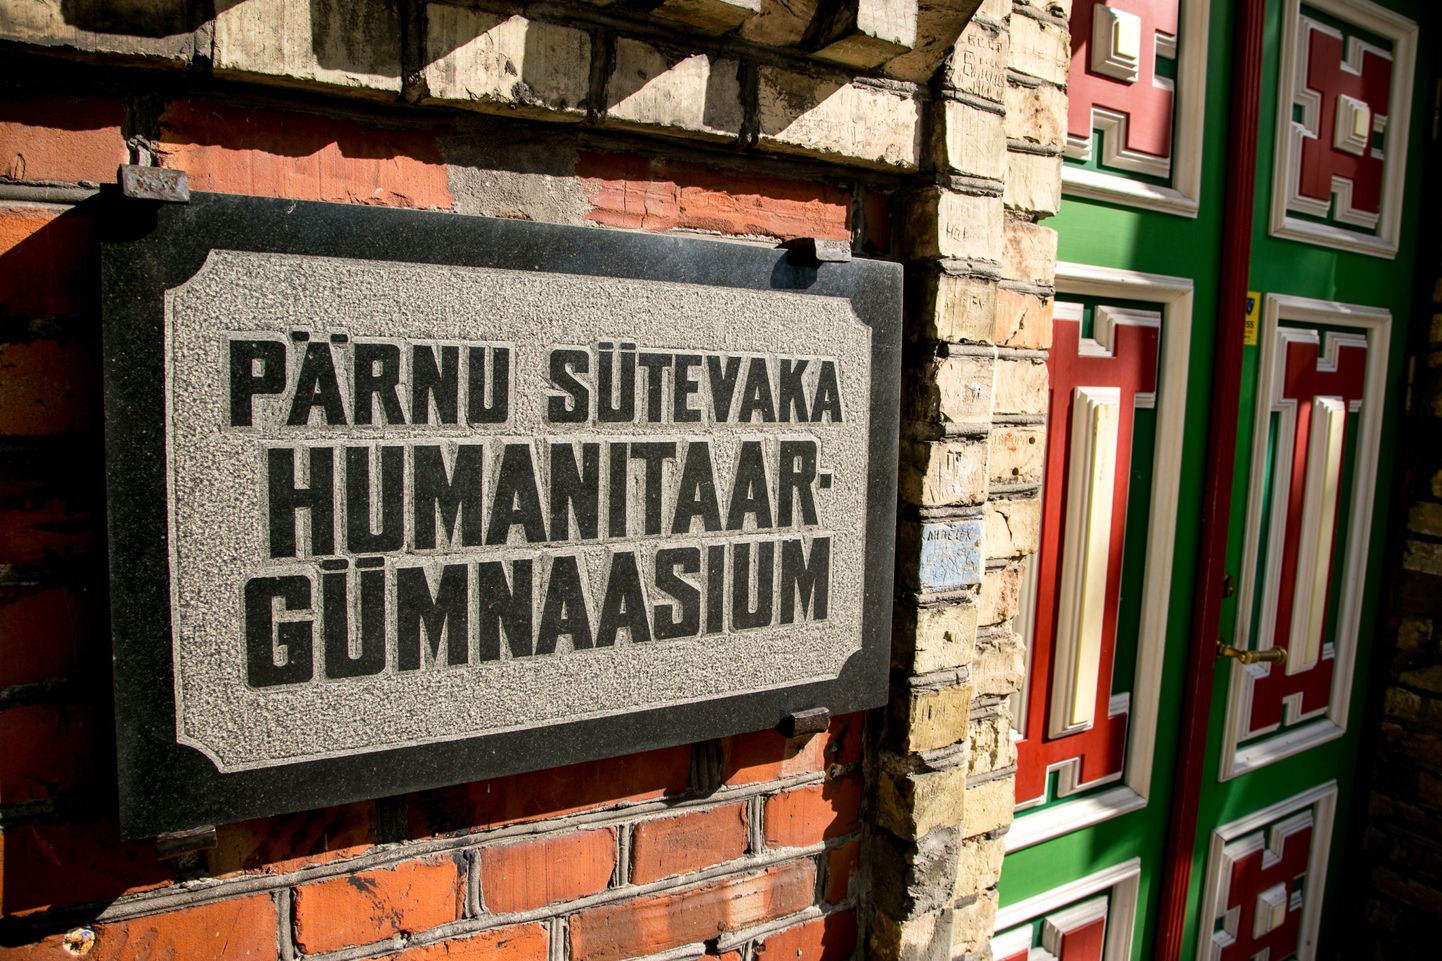 Võõrkeele-eksamit tehti kohalikest koolidest kõige paremini Pärnu Sütevaka humanitaargümnaasiumis, kus saavutasid keeletaseme kõik eksamit teinud õpilased.